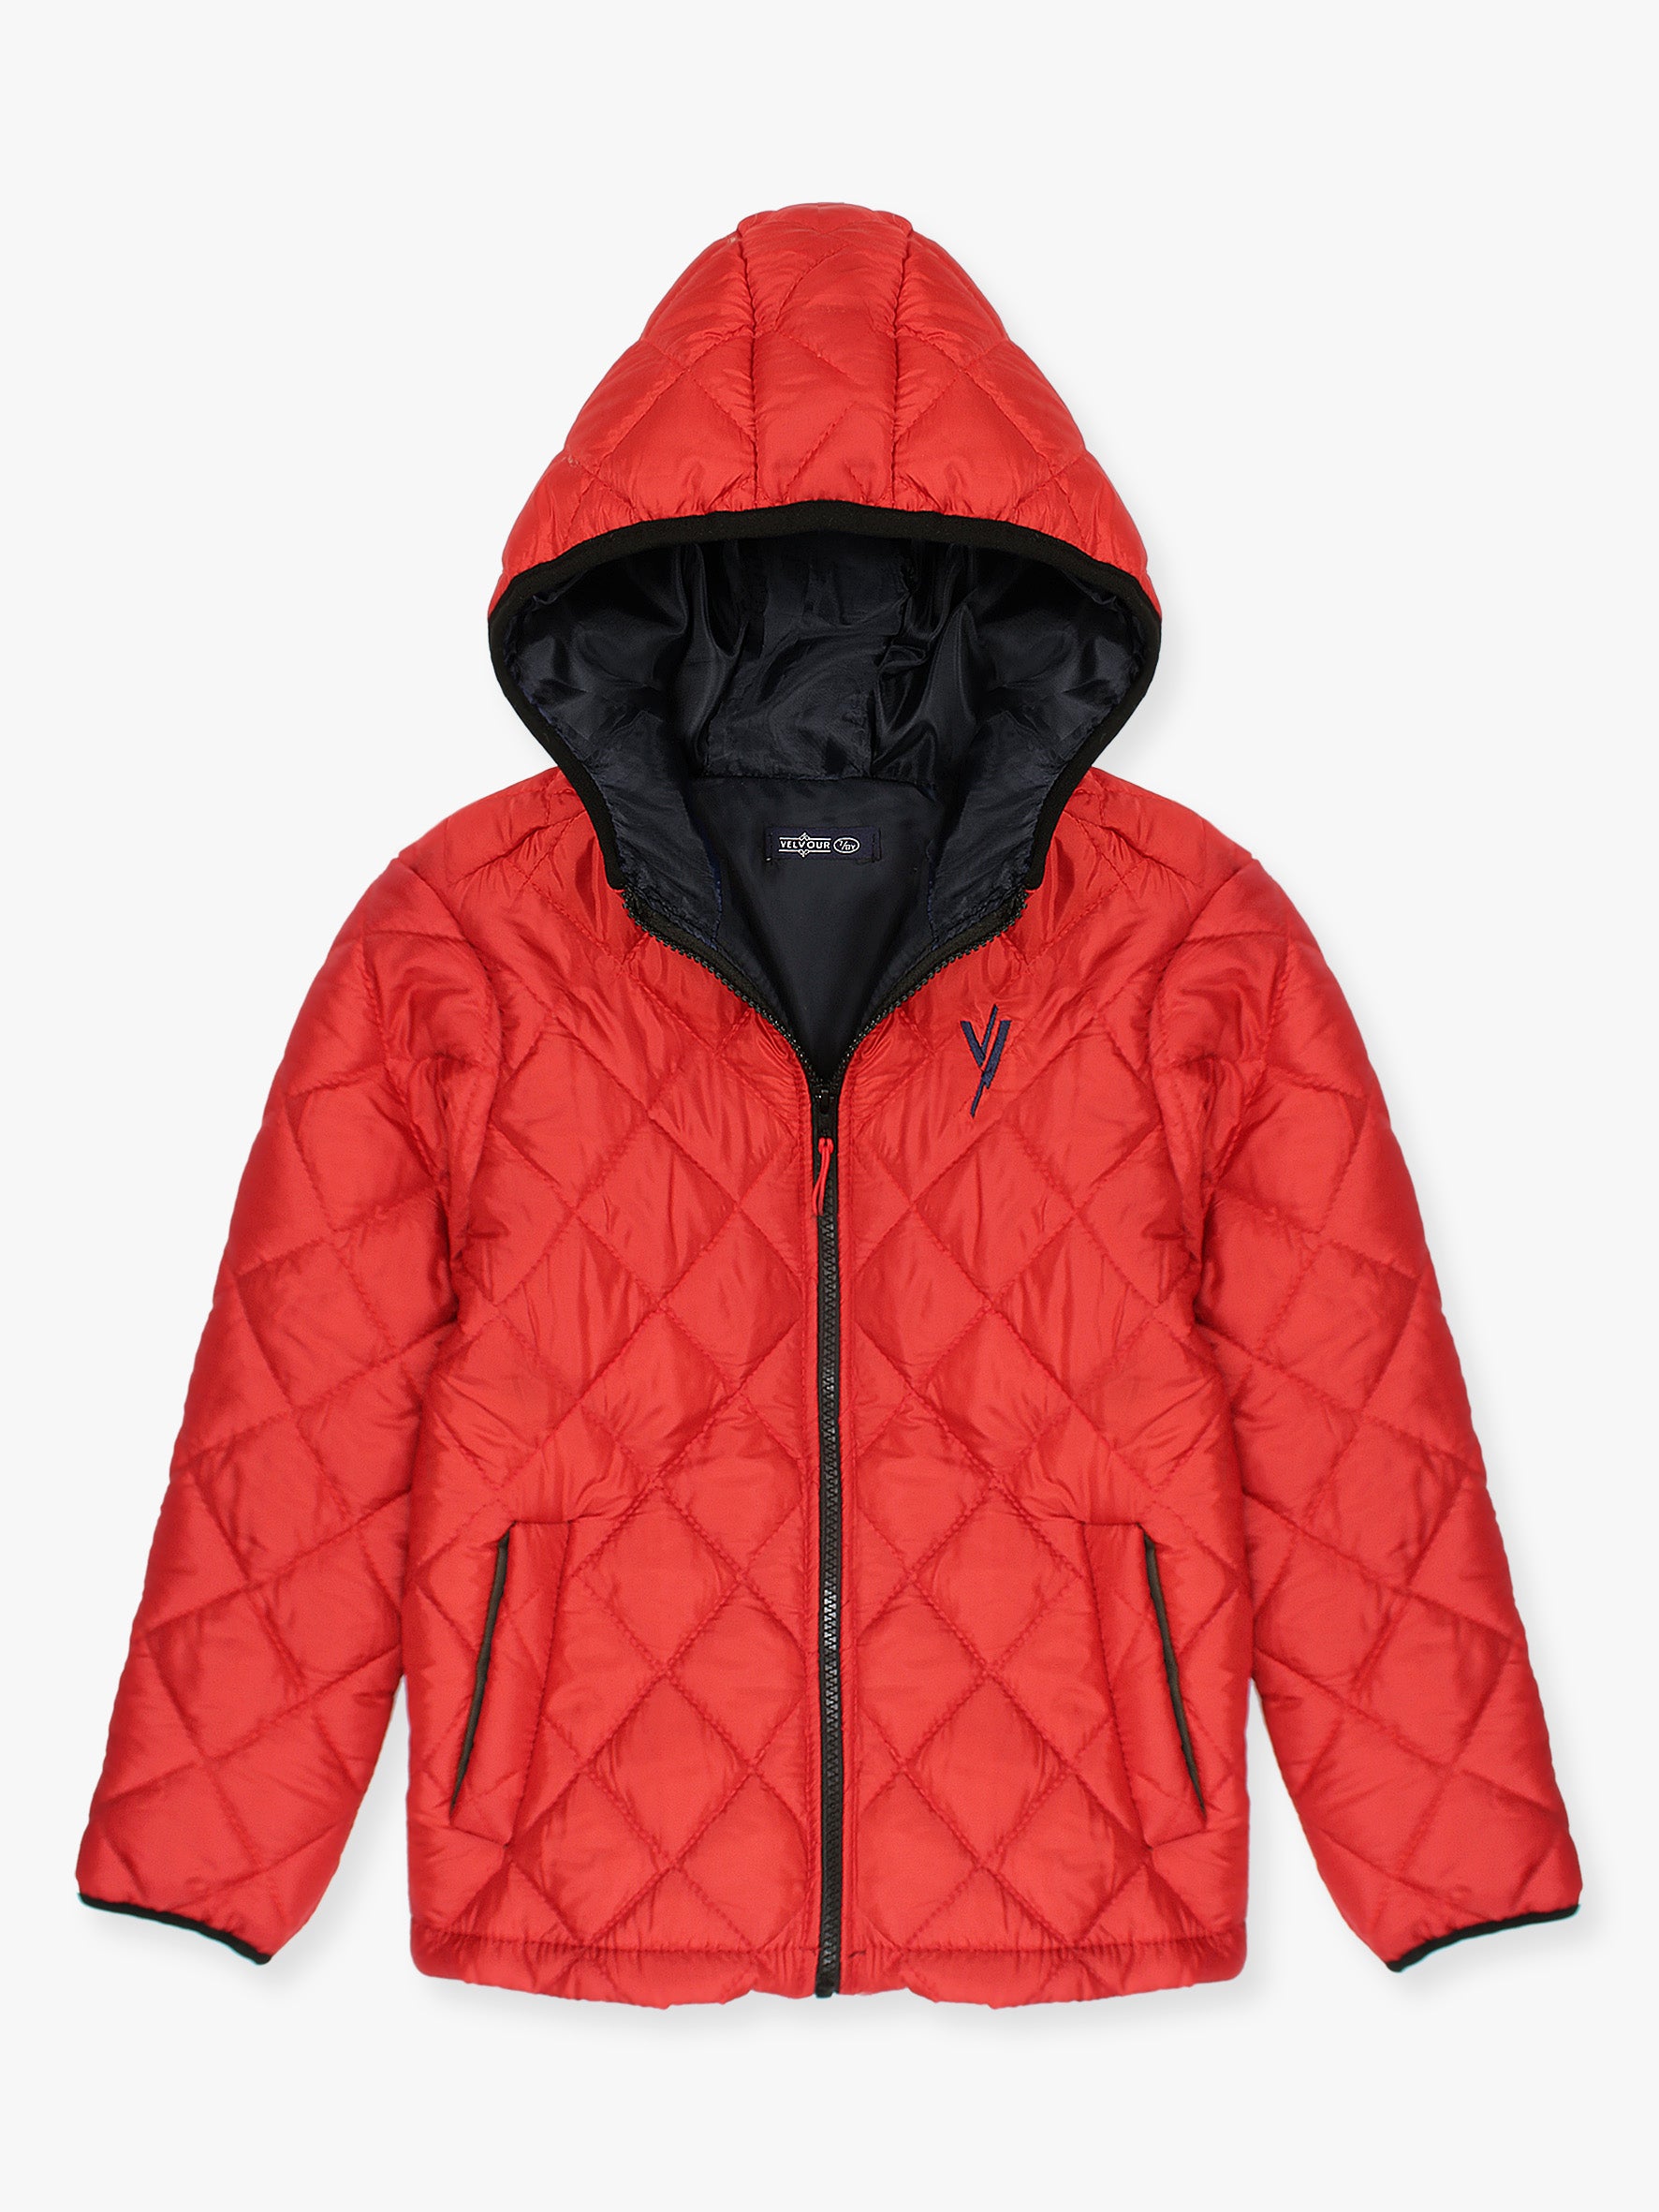 Full Sleeves Hooded Puffer Jacket Boys & Girls Red VJ19C